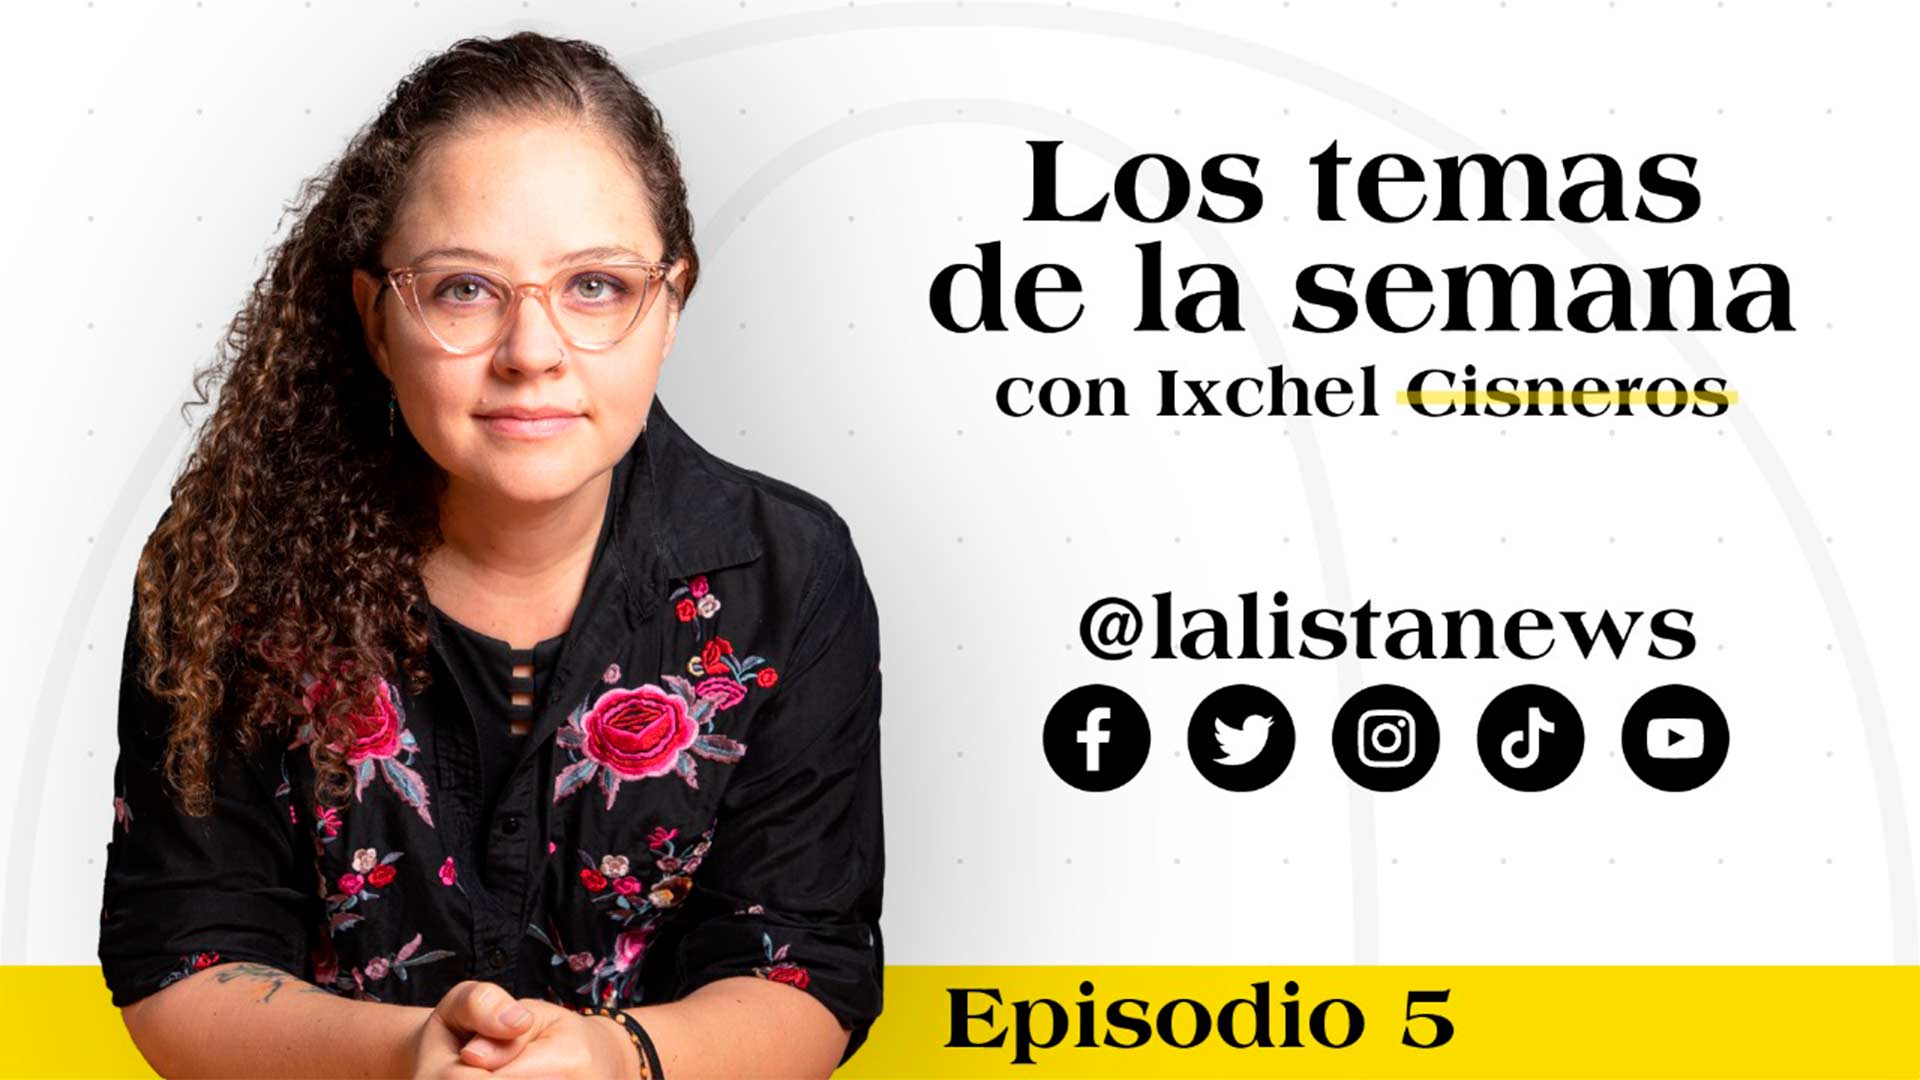 The Economist, sobrevivientes de feminicidio y violencia electoral: #LosTemasDeLaSemana con Ixchel Cisnero